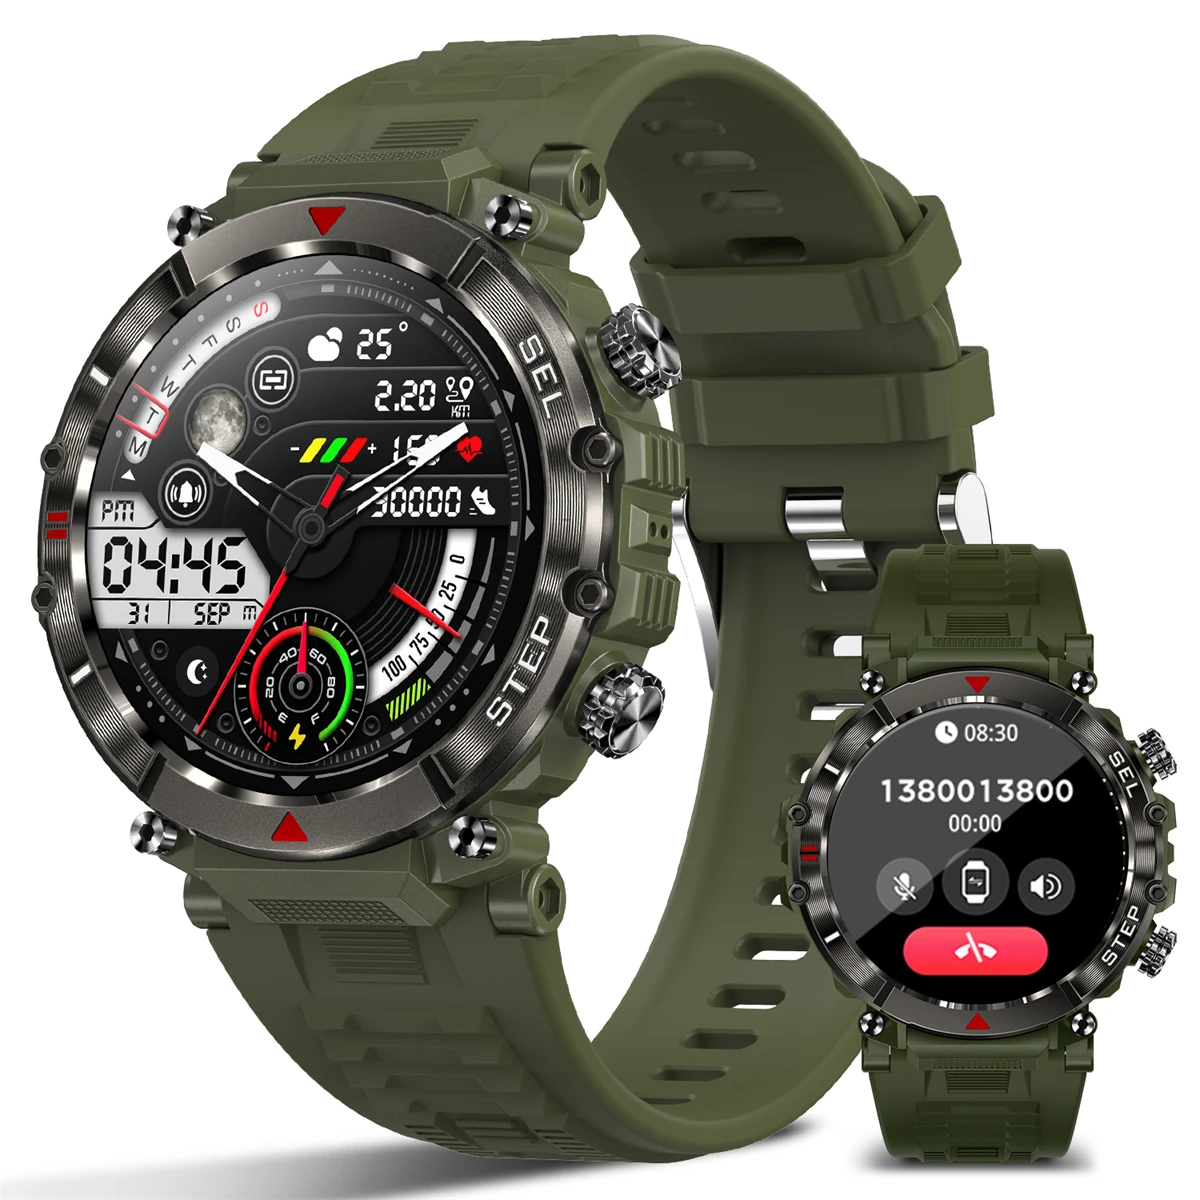 

MISTEP CF11 умные часы для мужчин BT голосовой вызов фитнес водонепроницаемый спорт Smartwatch длительный срок службы батареи часы для Android IOS телефон